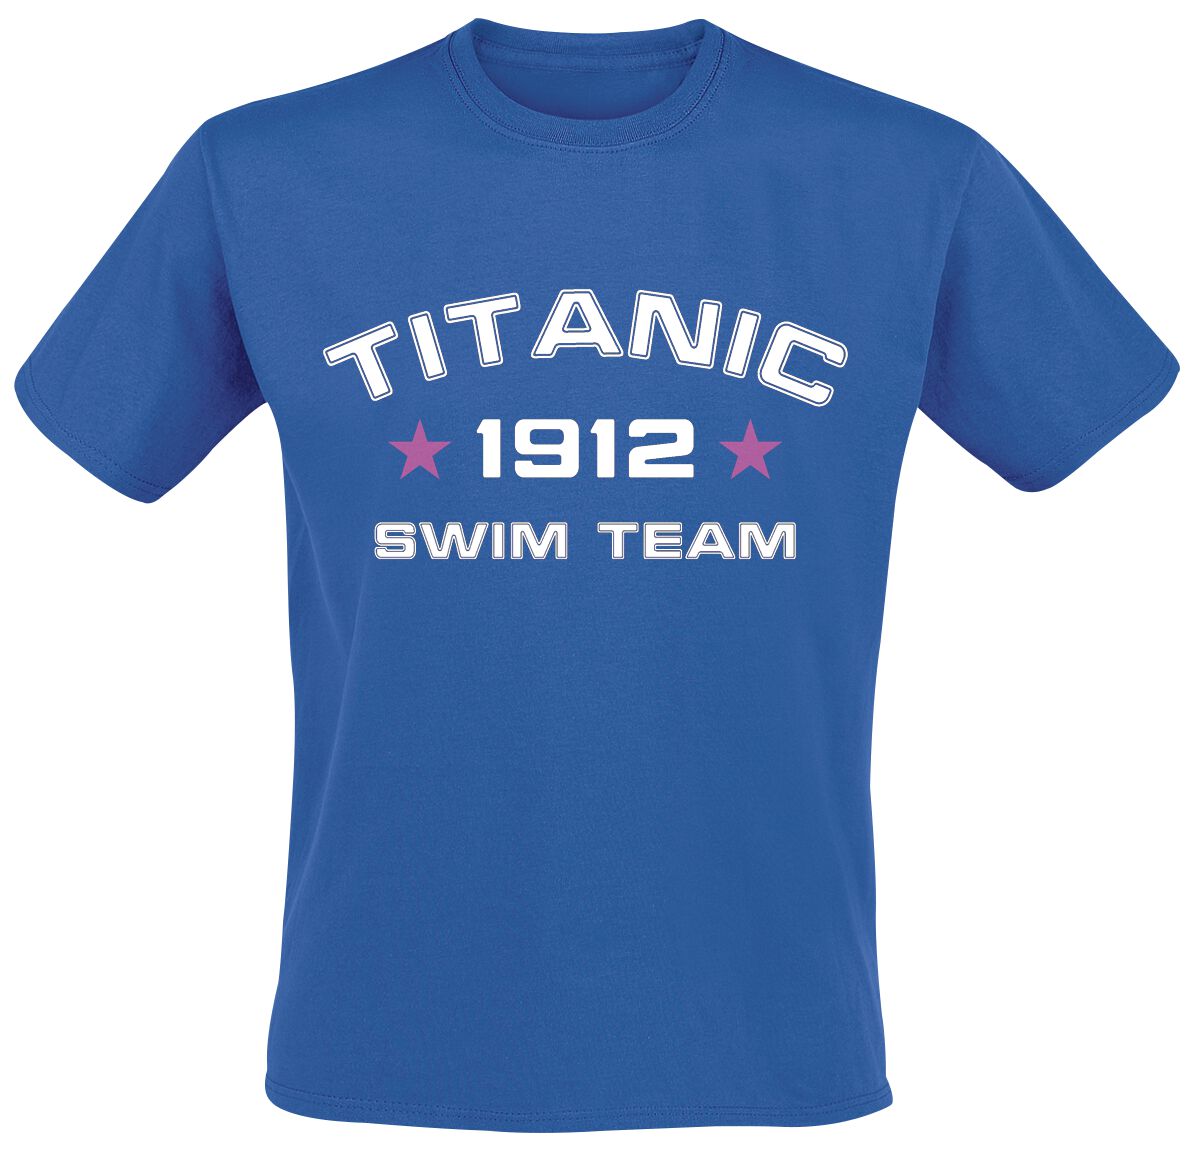 Sprüche T-Shirt - Titanic Swim Team - L bis 3XL - für Männer - Größe 3XL - royal